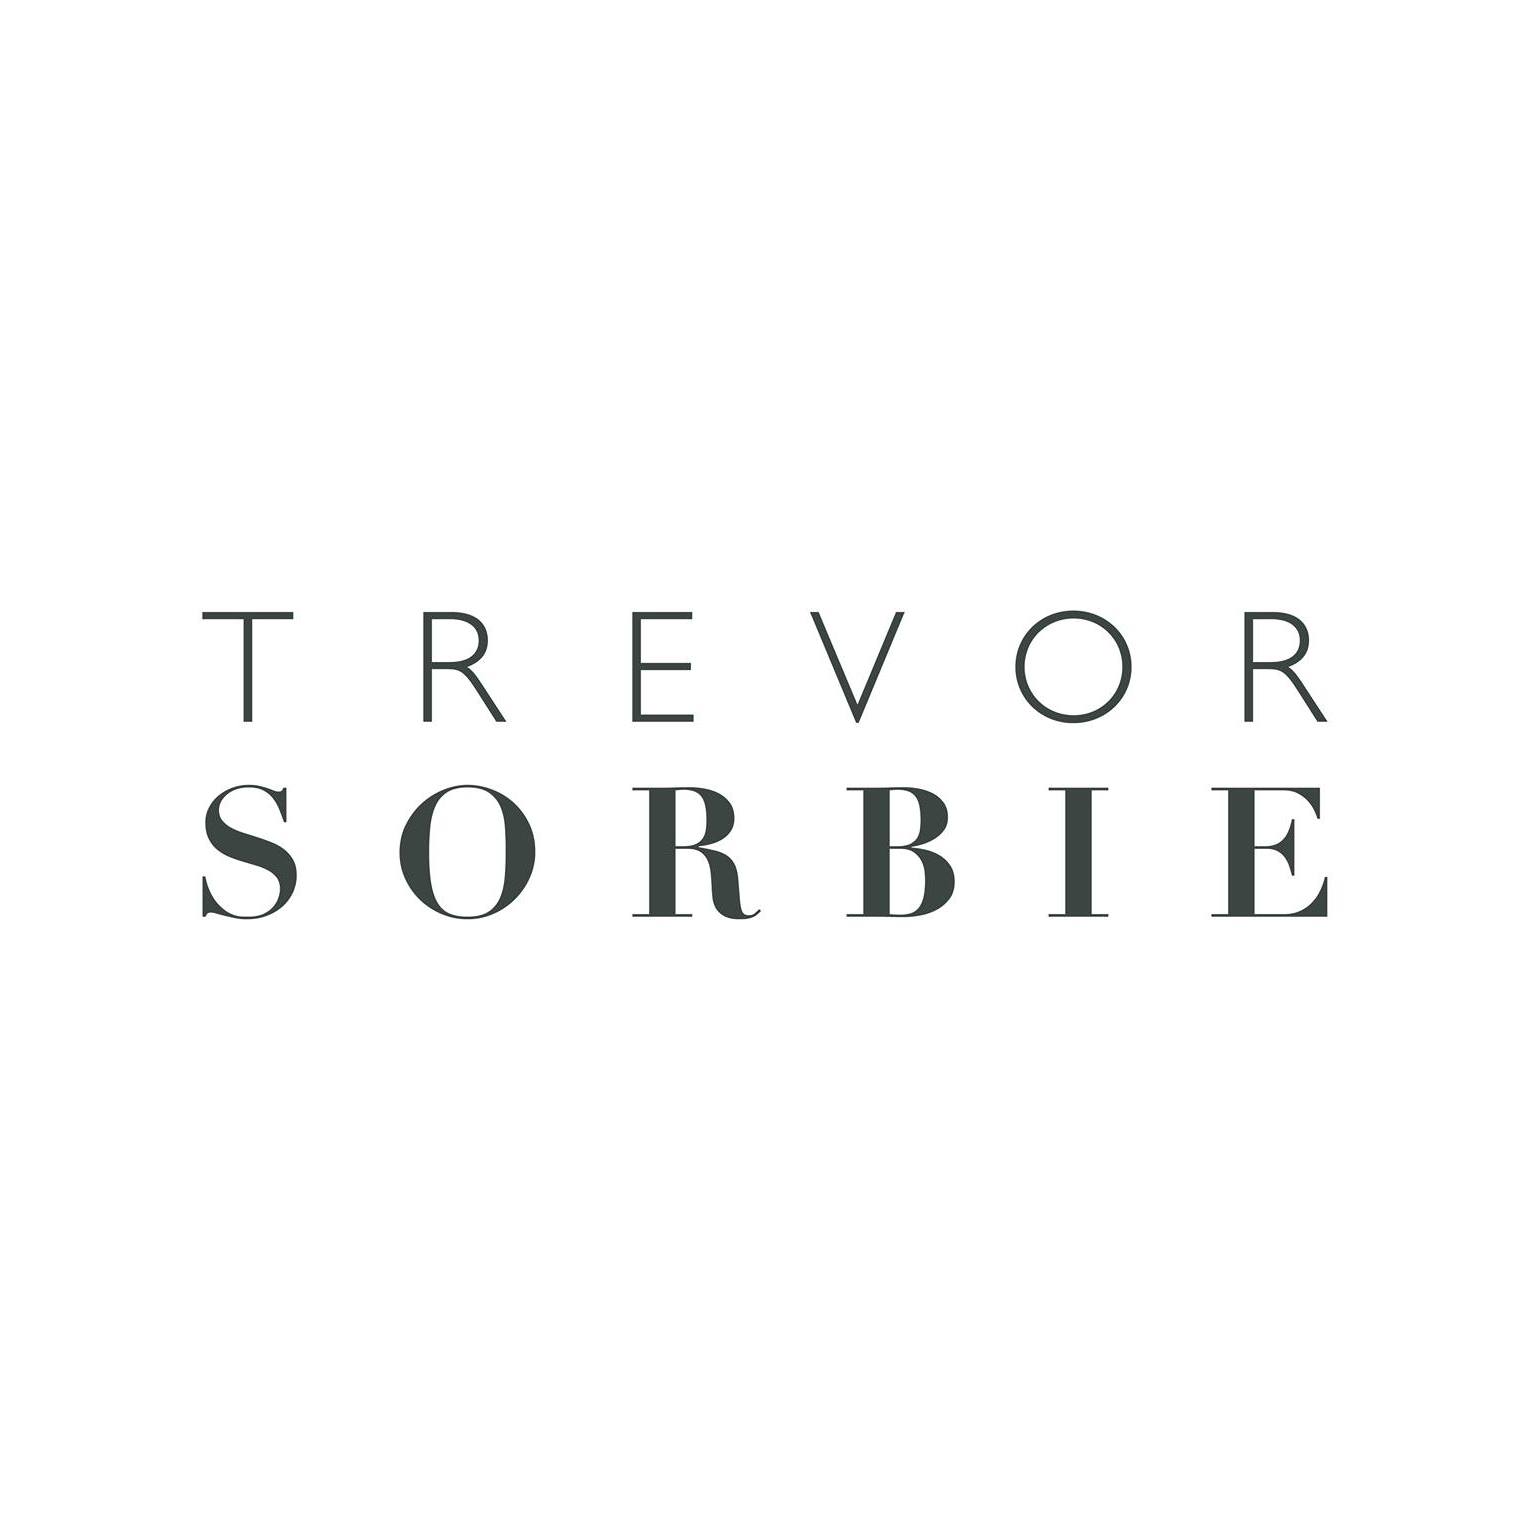 Trevor Sorbie